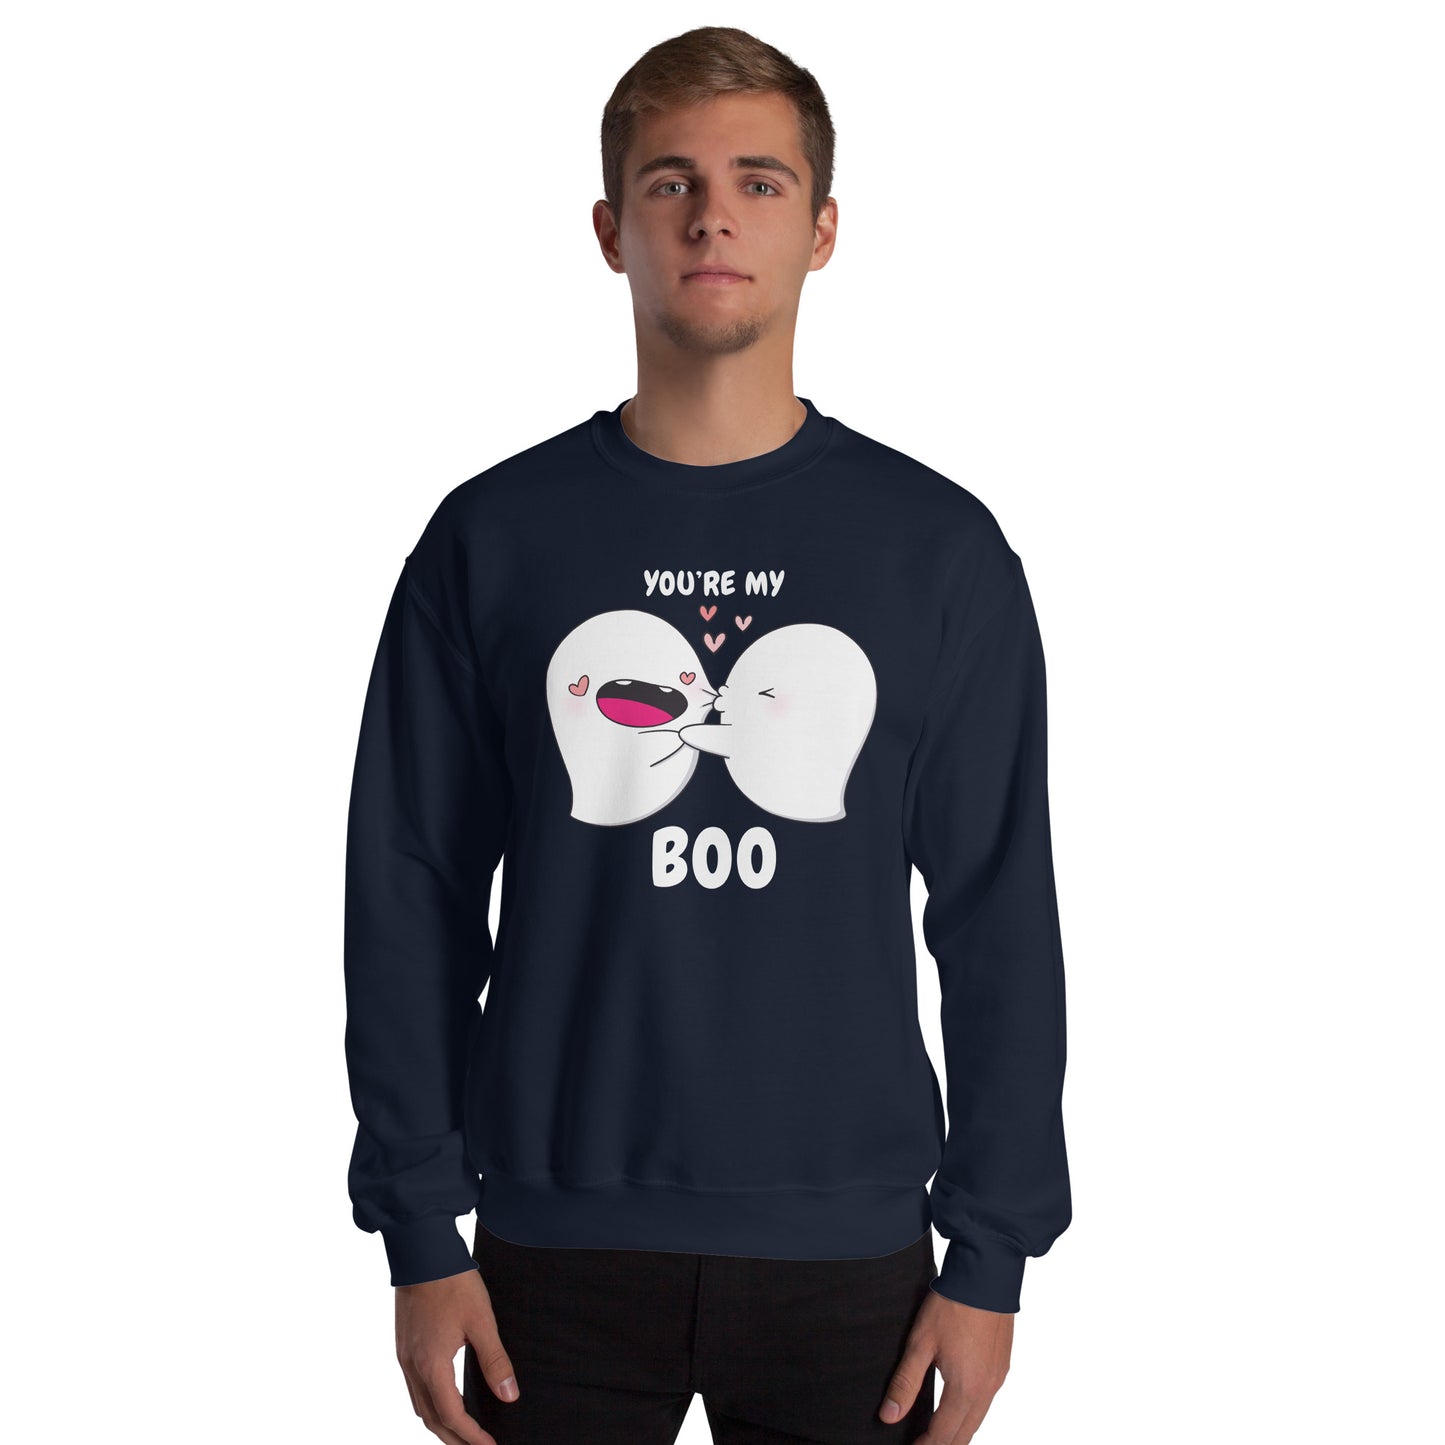 You're my boo - Unisex Sweatshirt